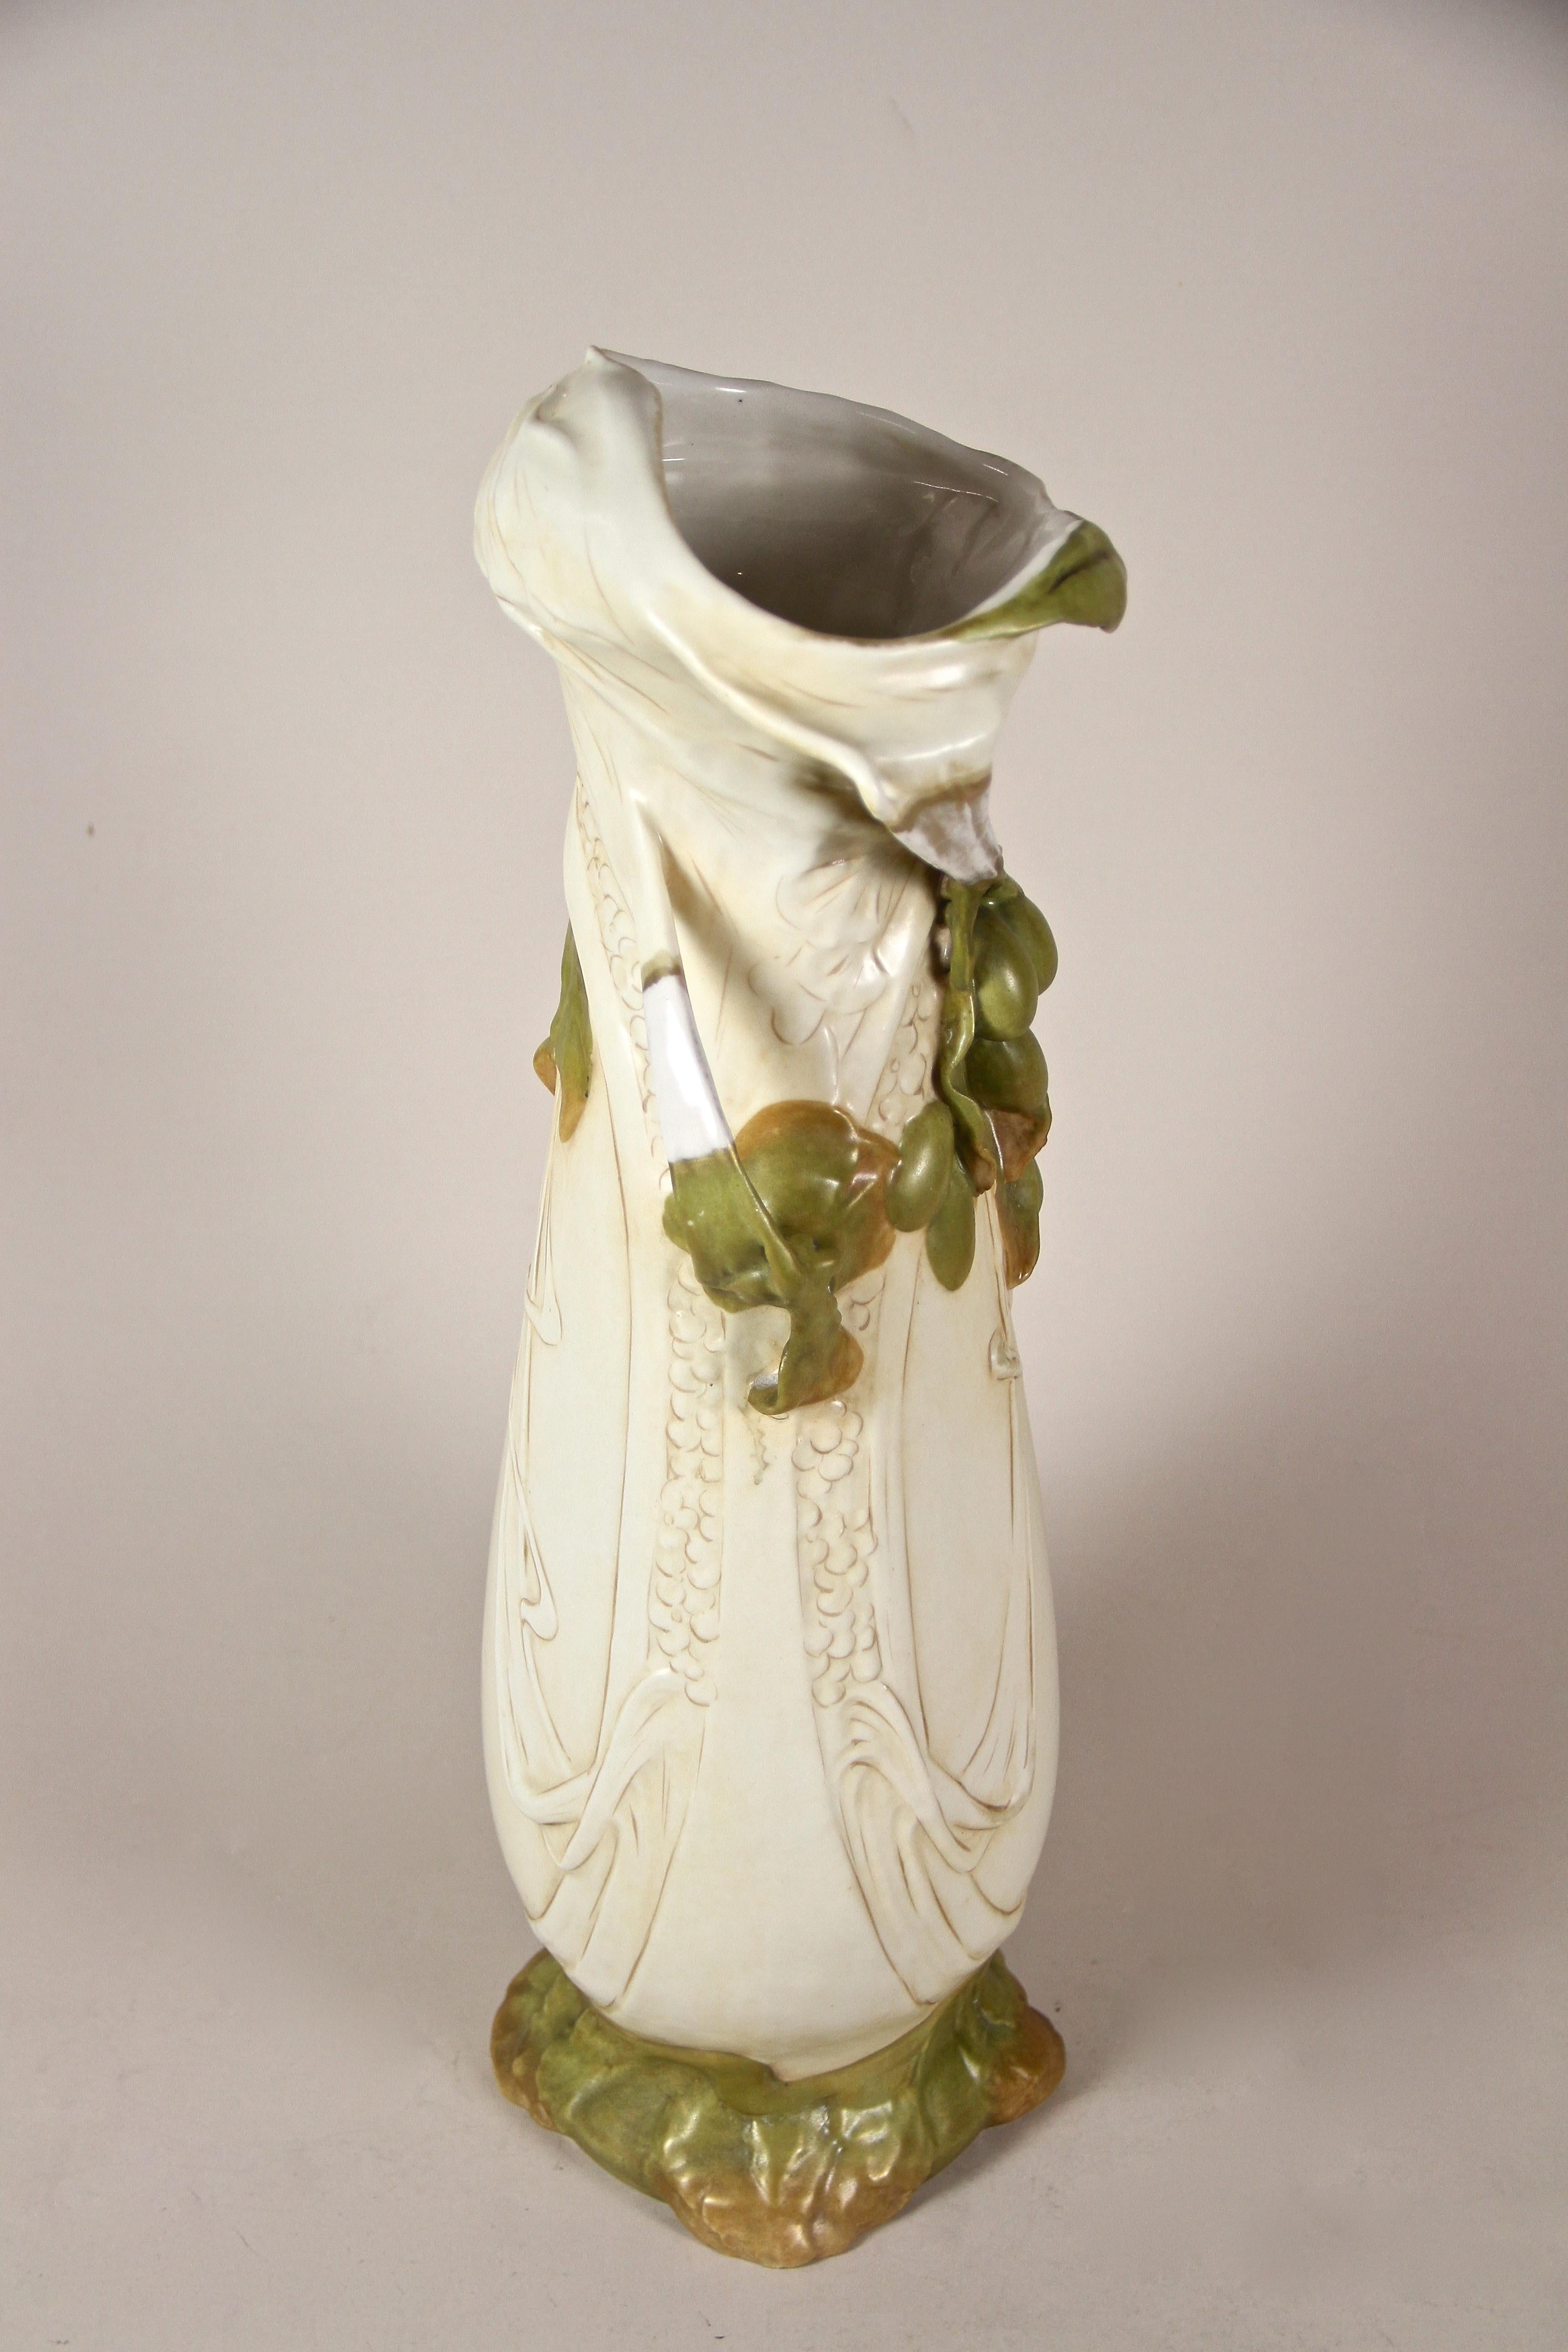 20th Century Art Nouveau Porcelain Vase with Olives by Royal Dux, Bohemia, circa 1900